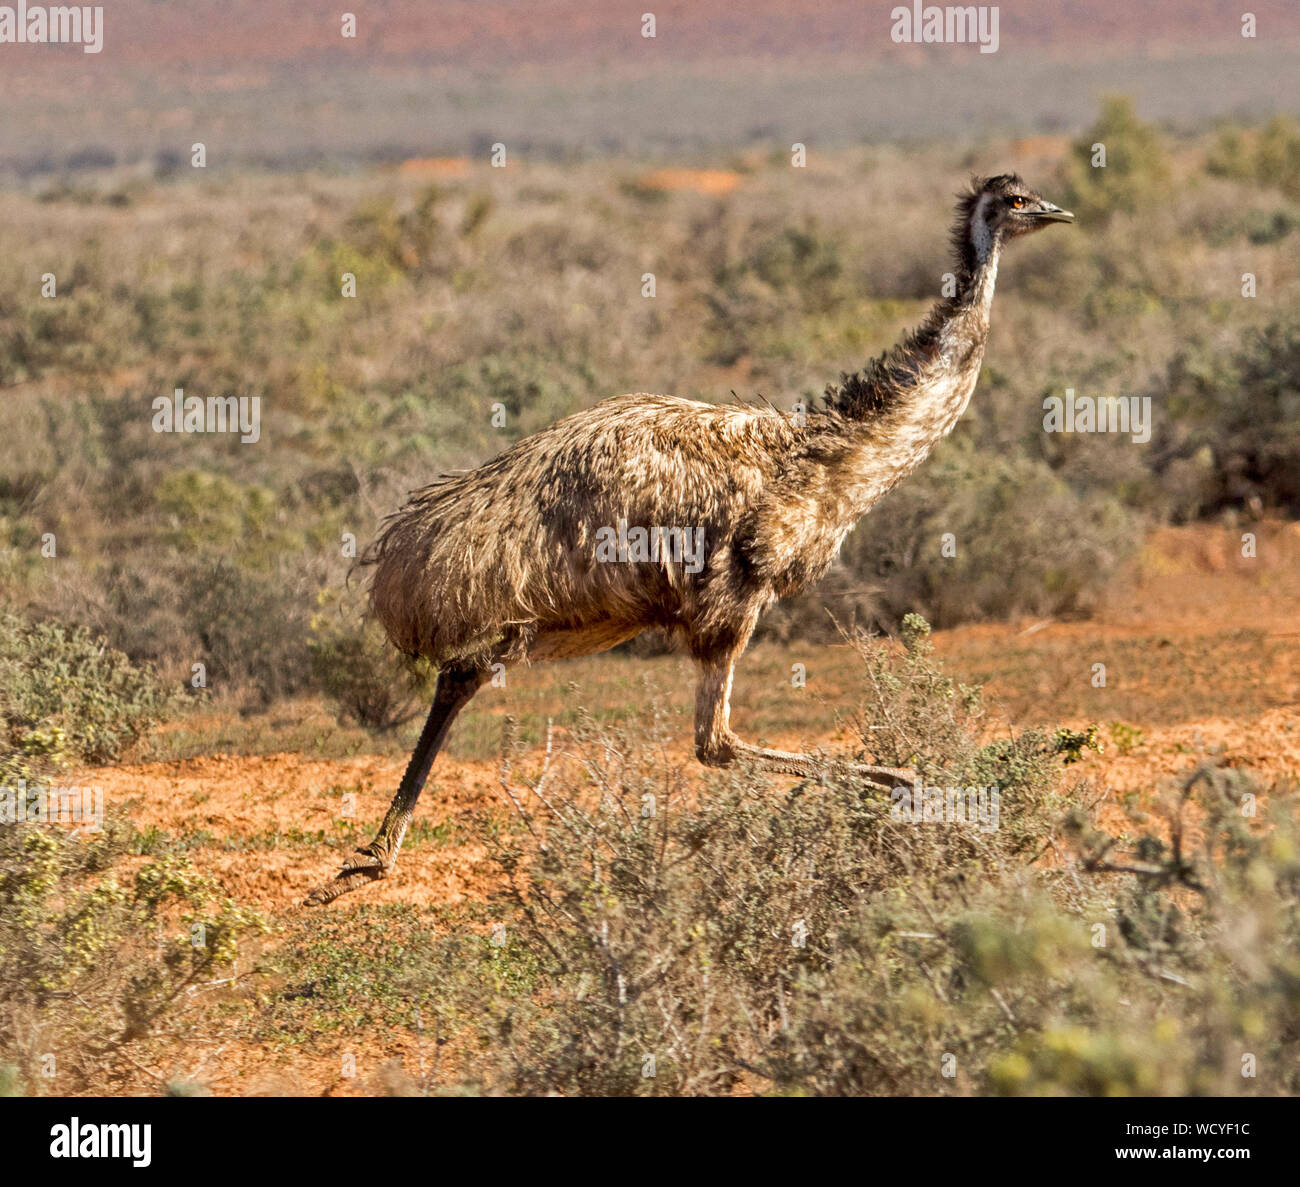 Australische emu, Dromaius novaehollandiae, großen flugunfähigen Vogel, ausgeführt durch niedrig wachsende Vegetation auf outback Plains Stockfoto